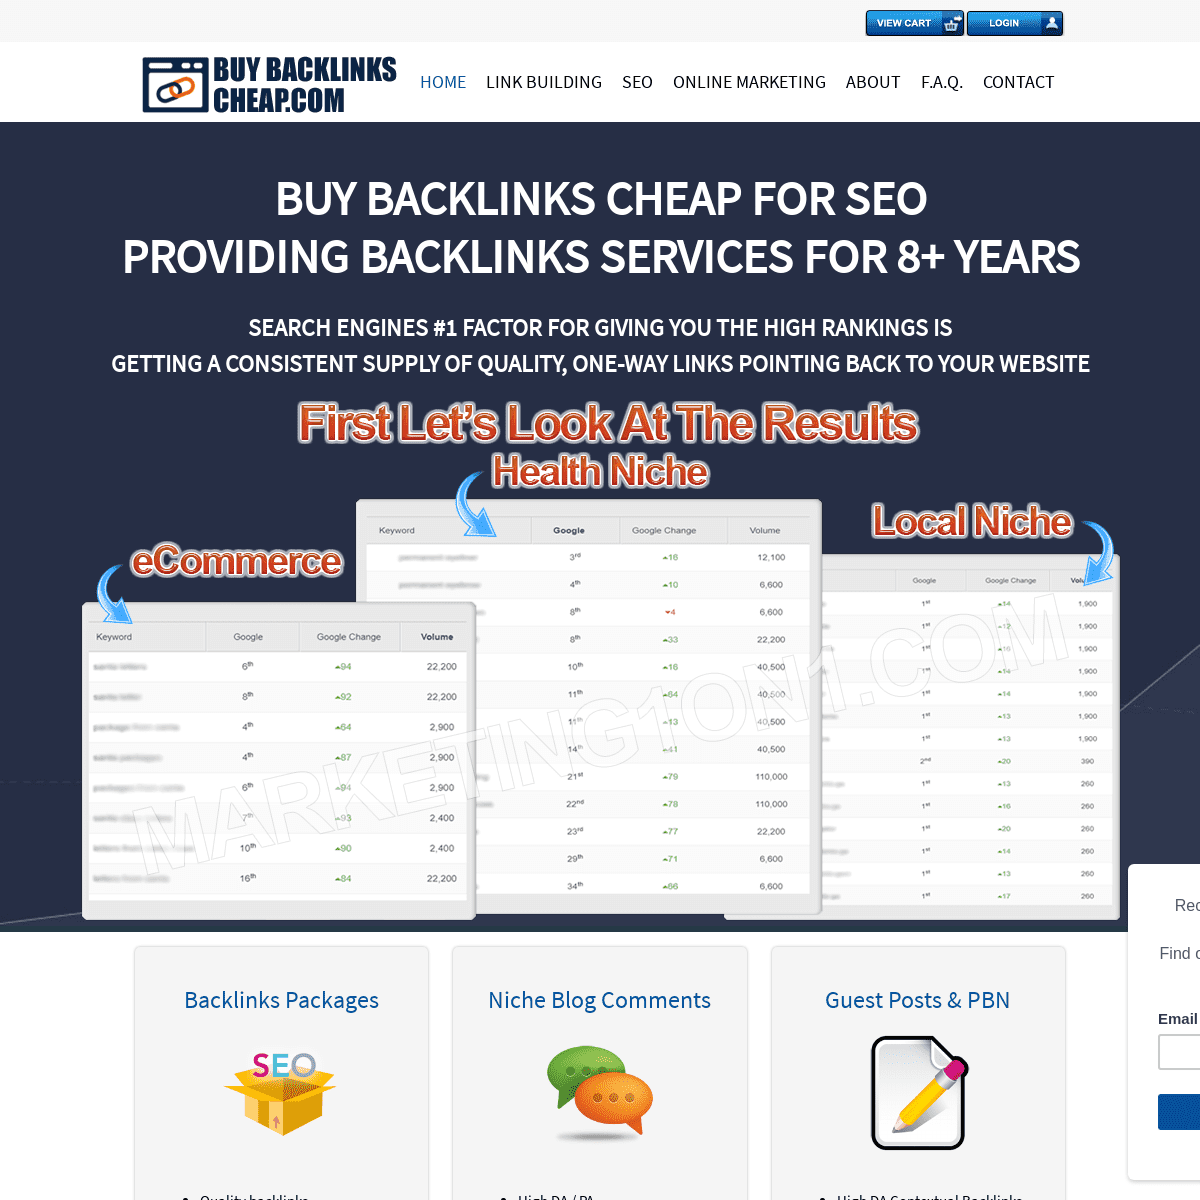 A complete backup of https://buybacklinkscheap.com